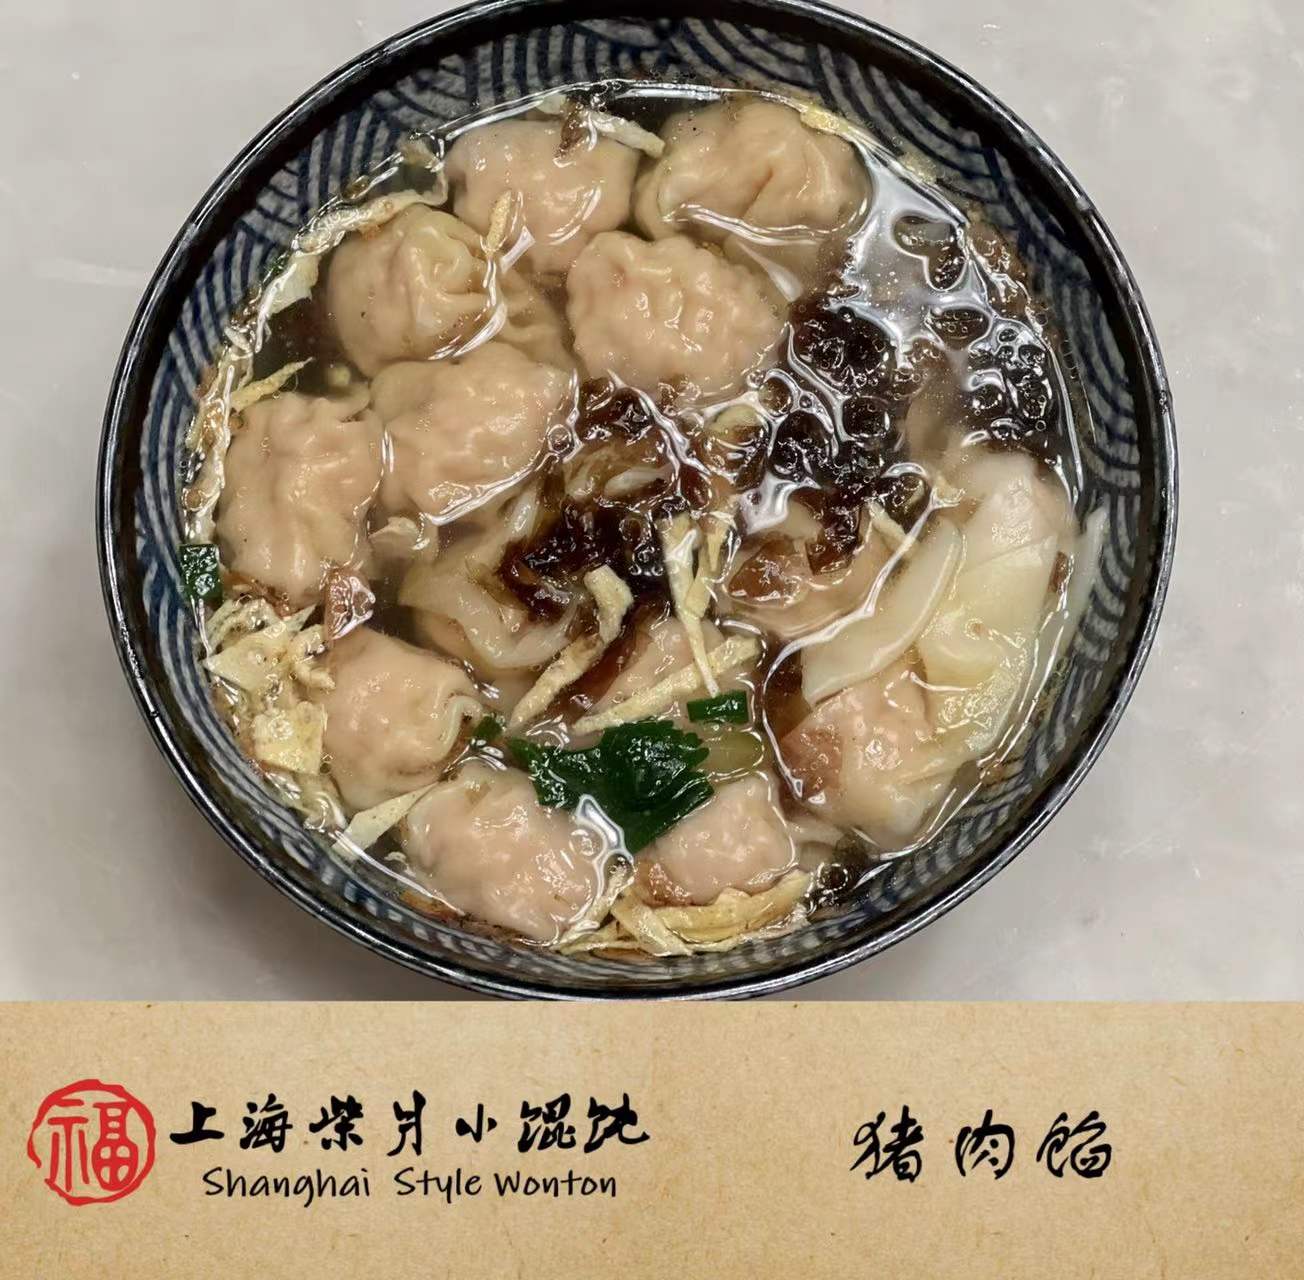 Shanghai Style Pork Wonton 15pc-eBest-Dumplings,Frozen food